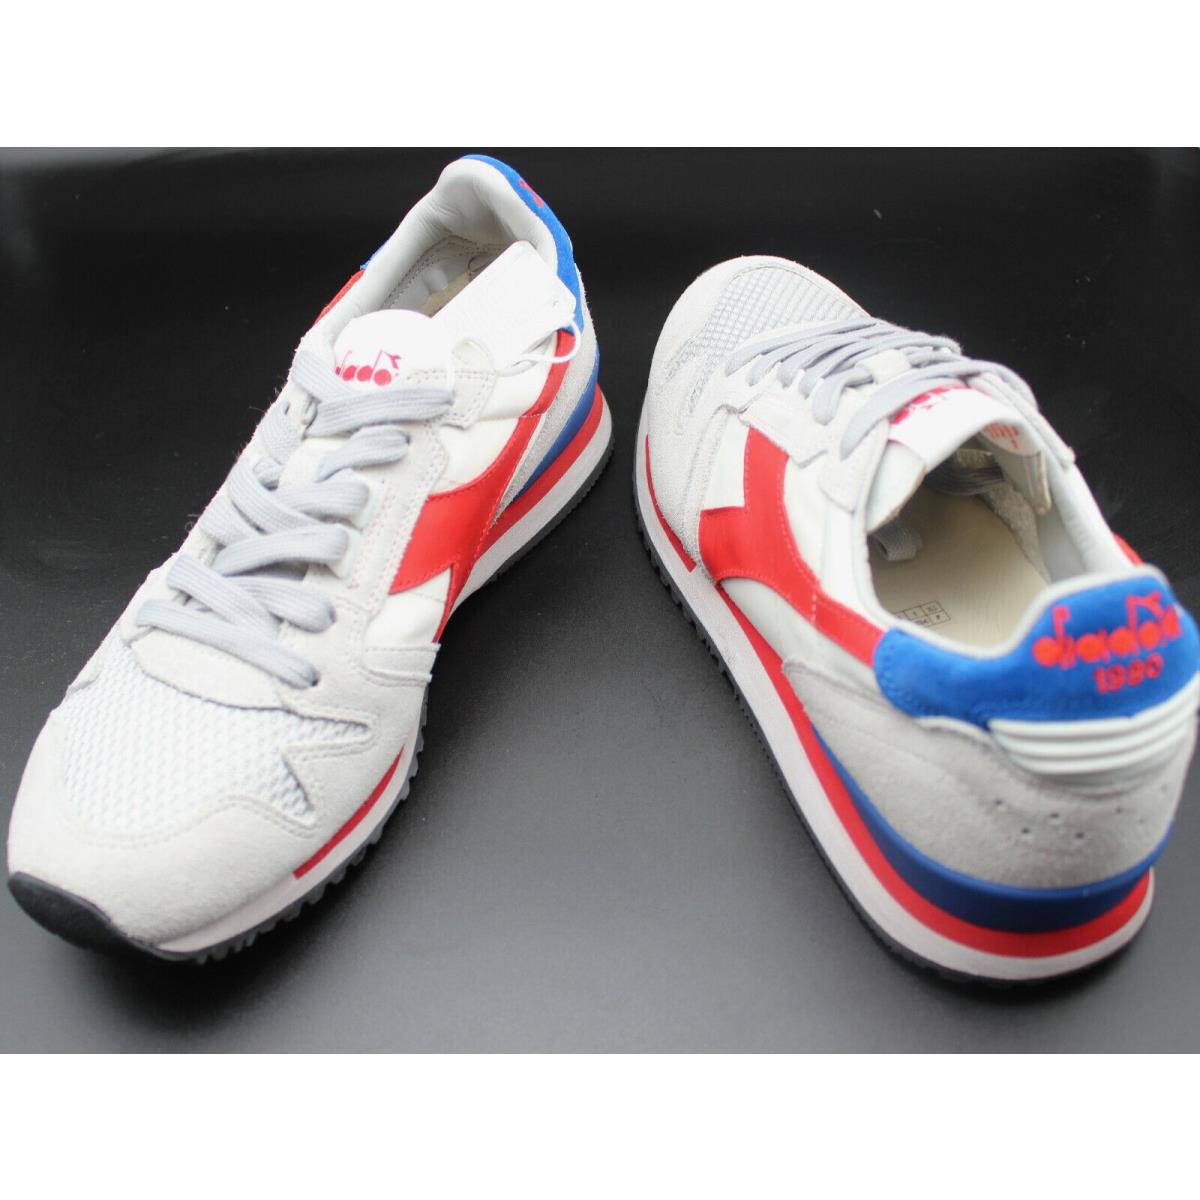 Diadora Heritage Men White Grey Red Exodus Nyl Sneaker Shoes Size 7.5 Eur 40.5